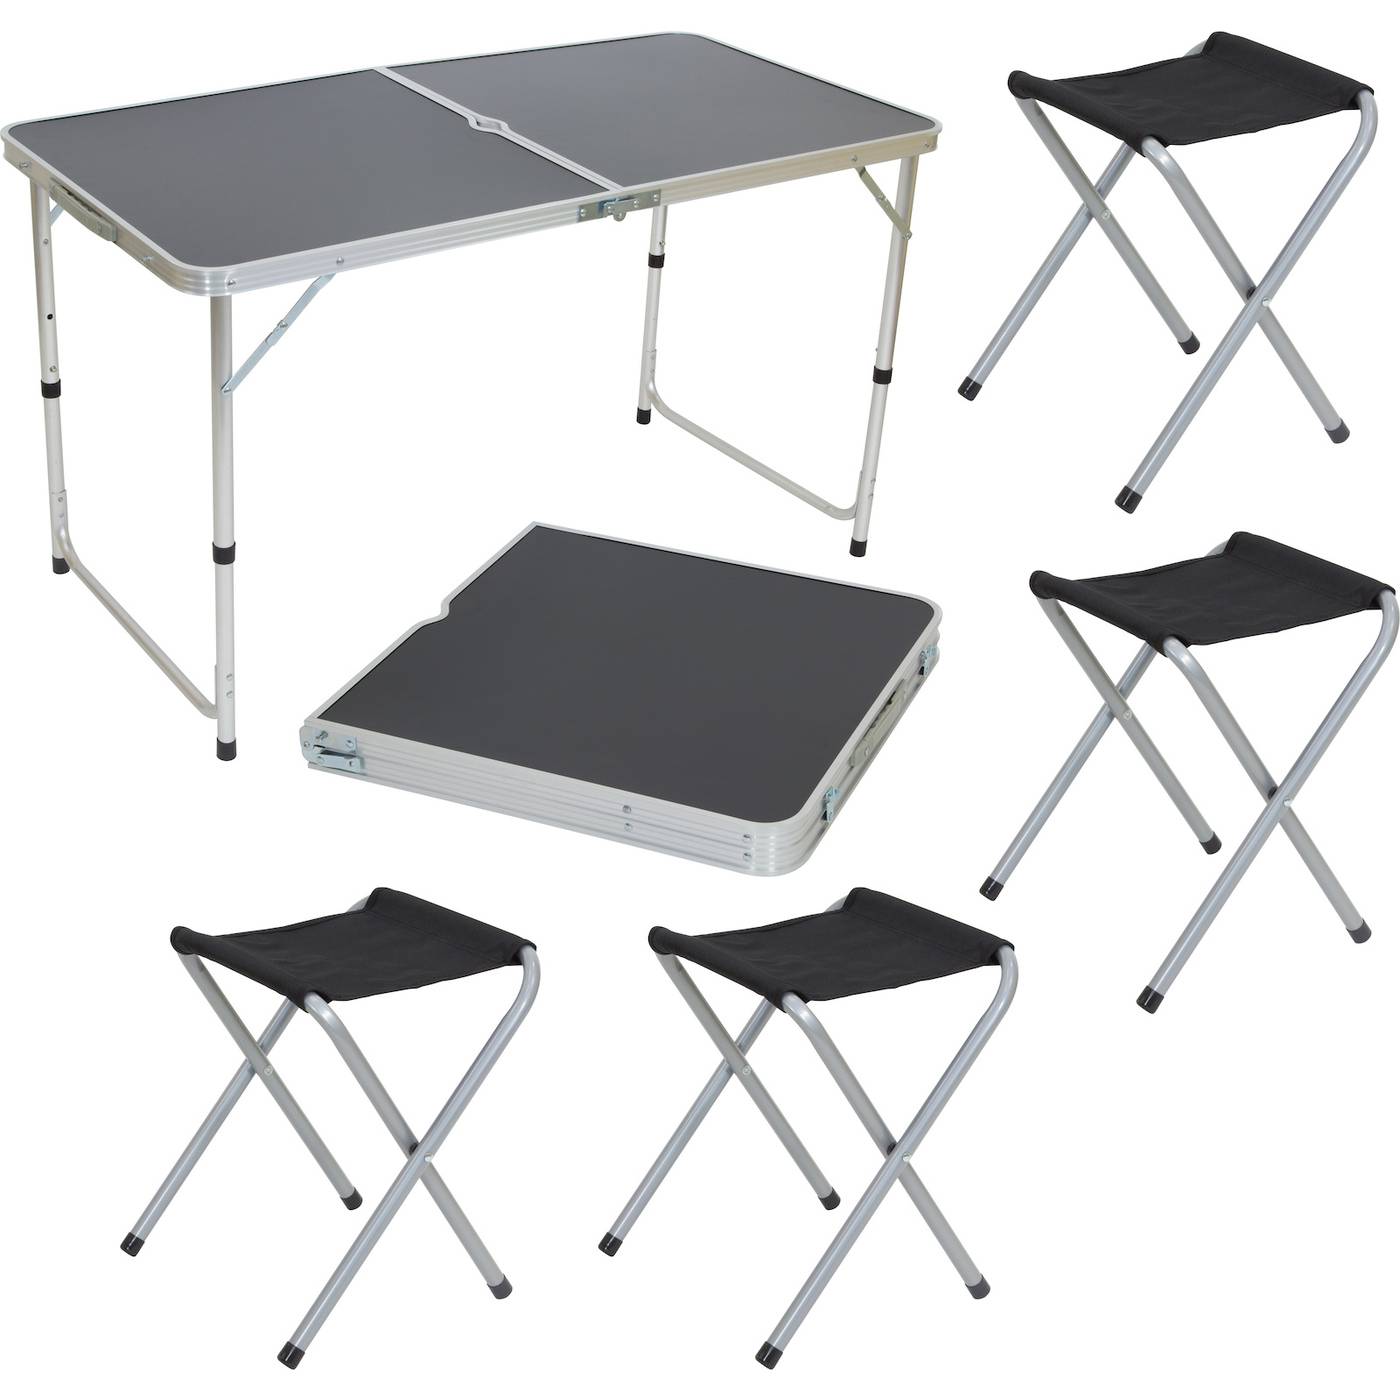 Стол 4 заказать. Экос cho-150-e комплект "пикник" (стол и 4 стула ) черный (992992). Набор мебели Atemi ATS-400. Стол складной GH 404 Ecos. Комплект Ecos пикник cho-150-e.